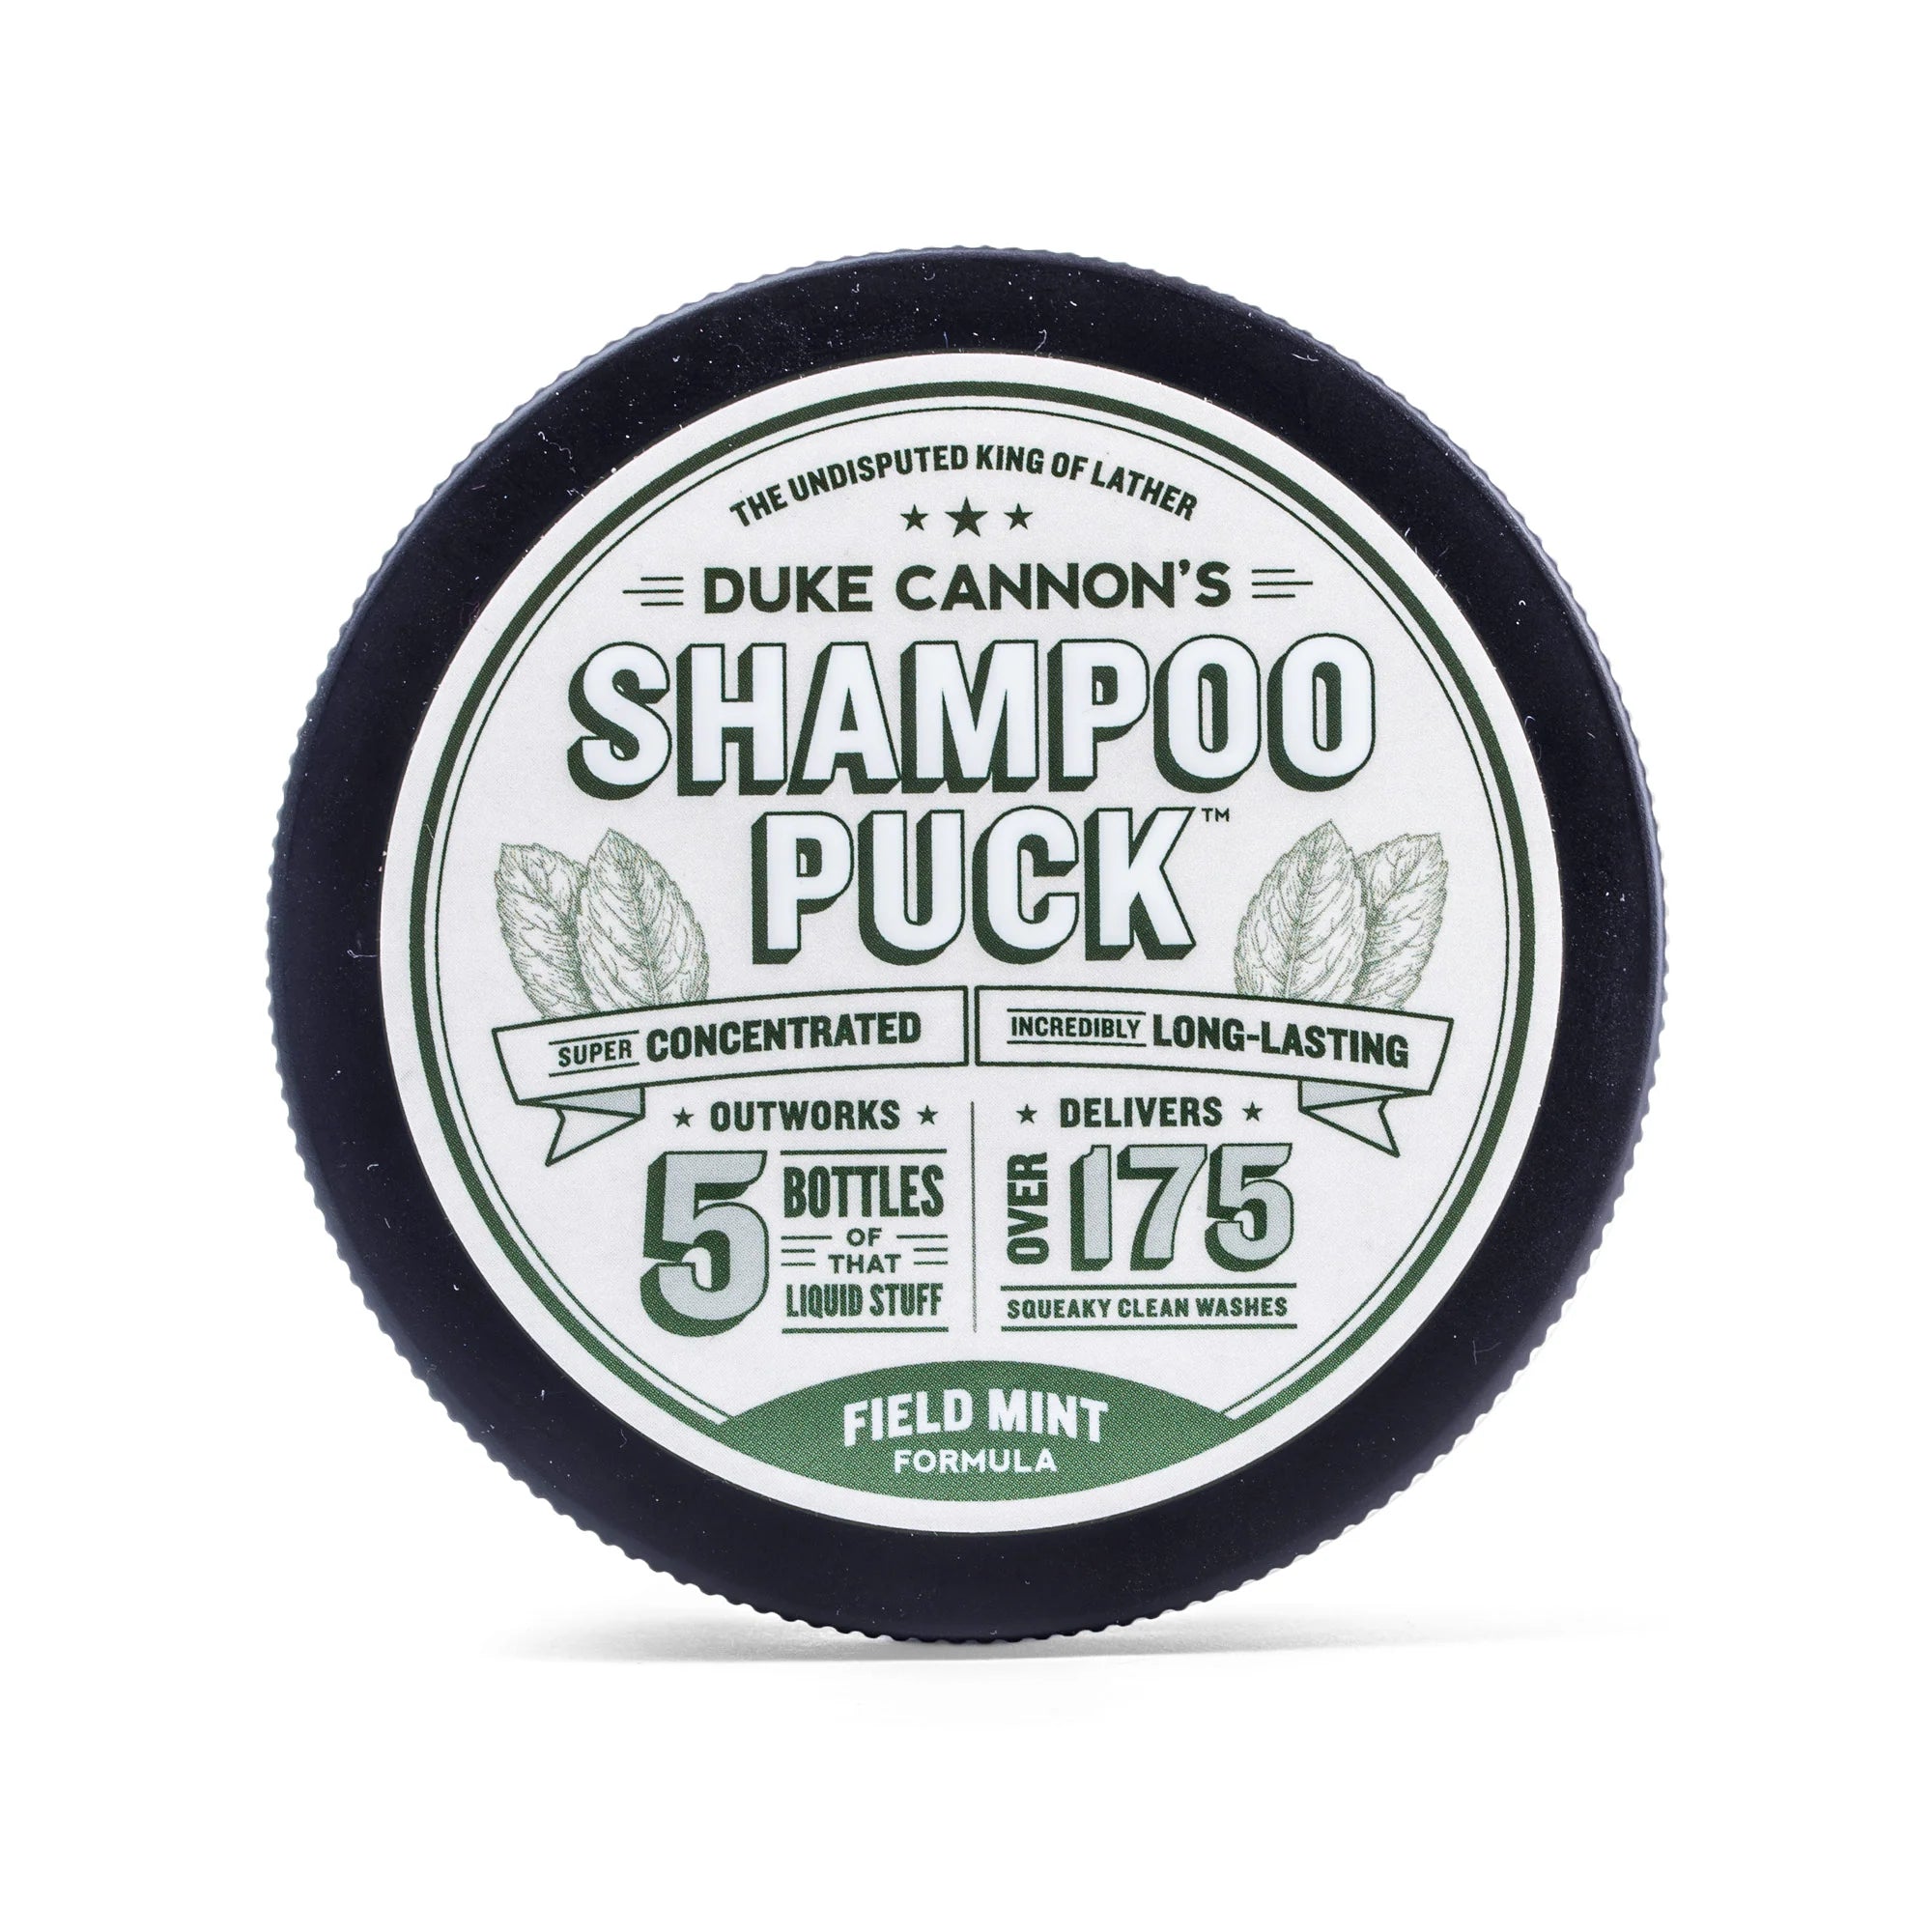 Field Mint Shampoo Puck